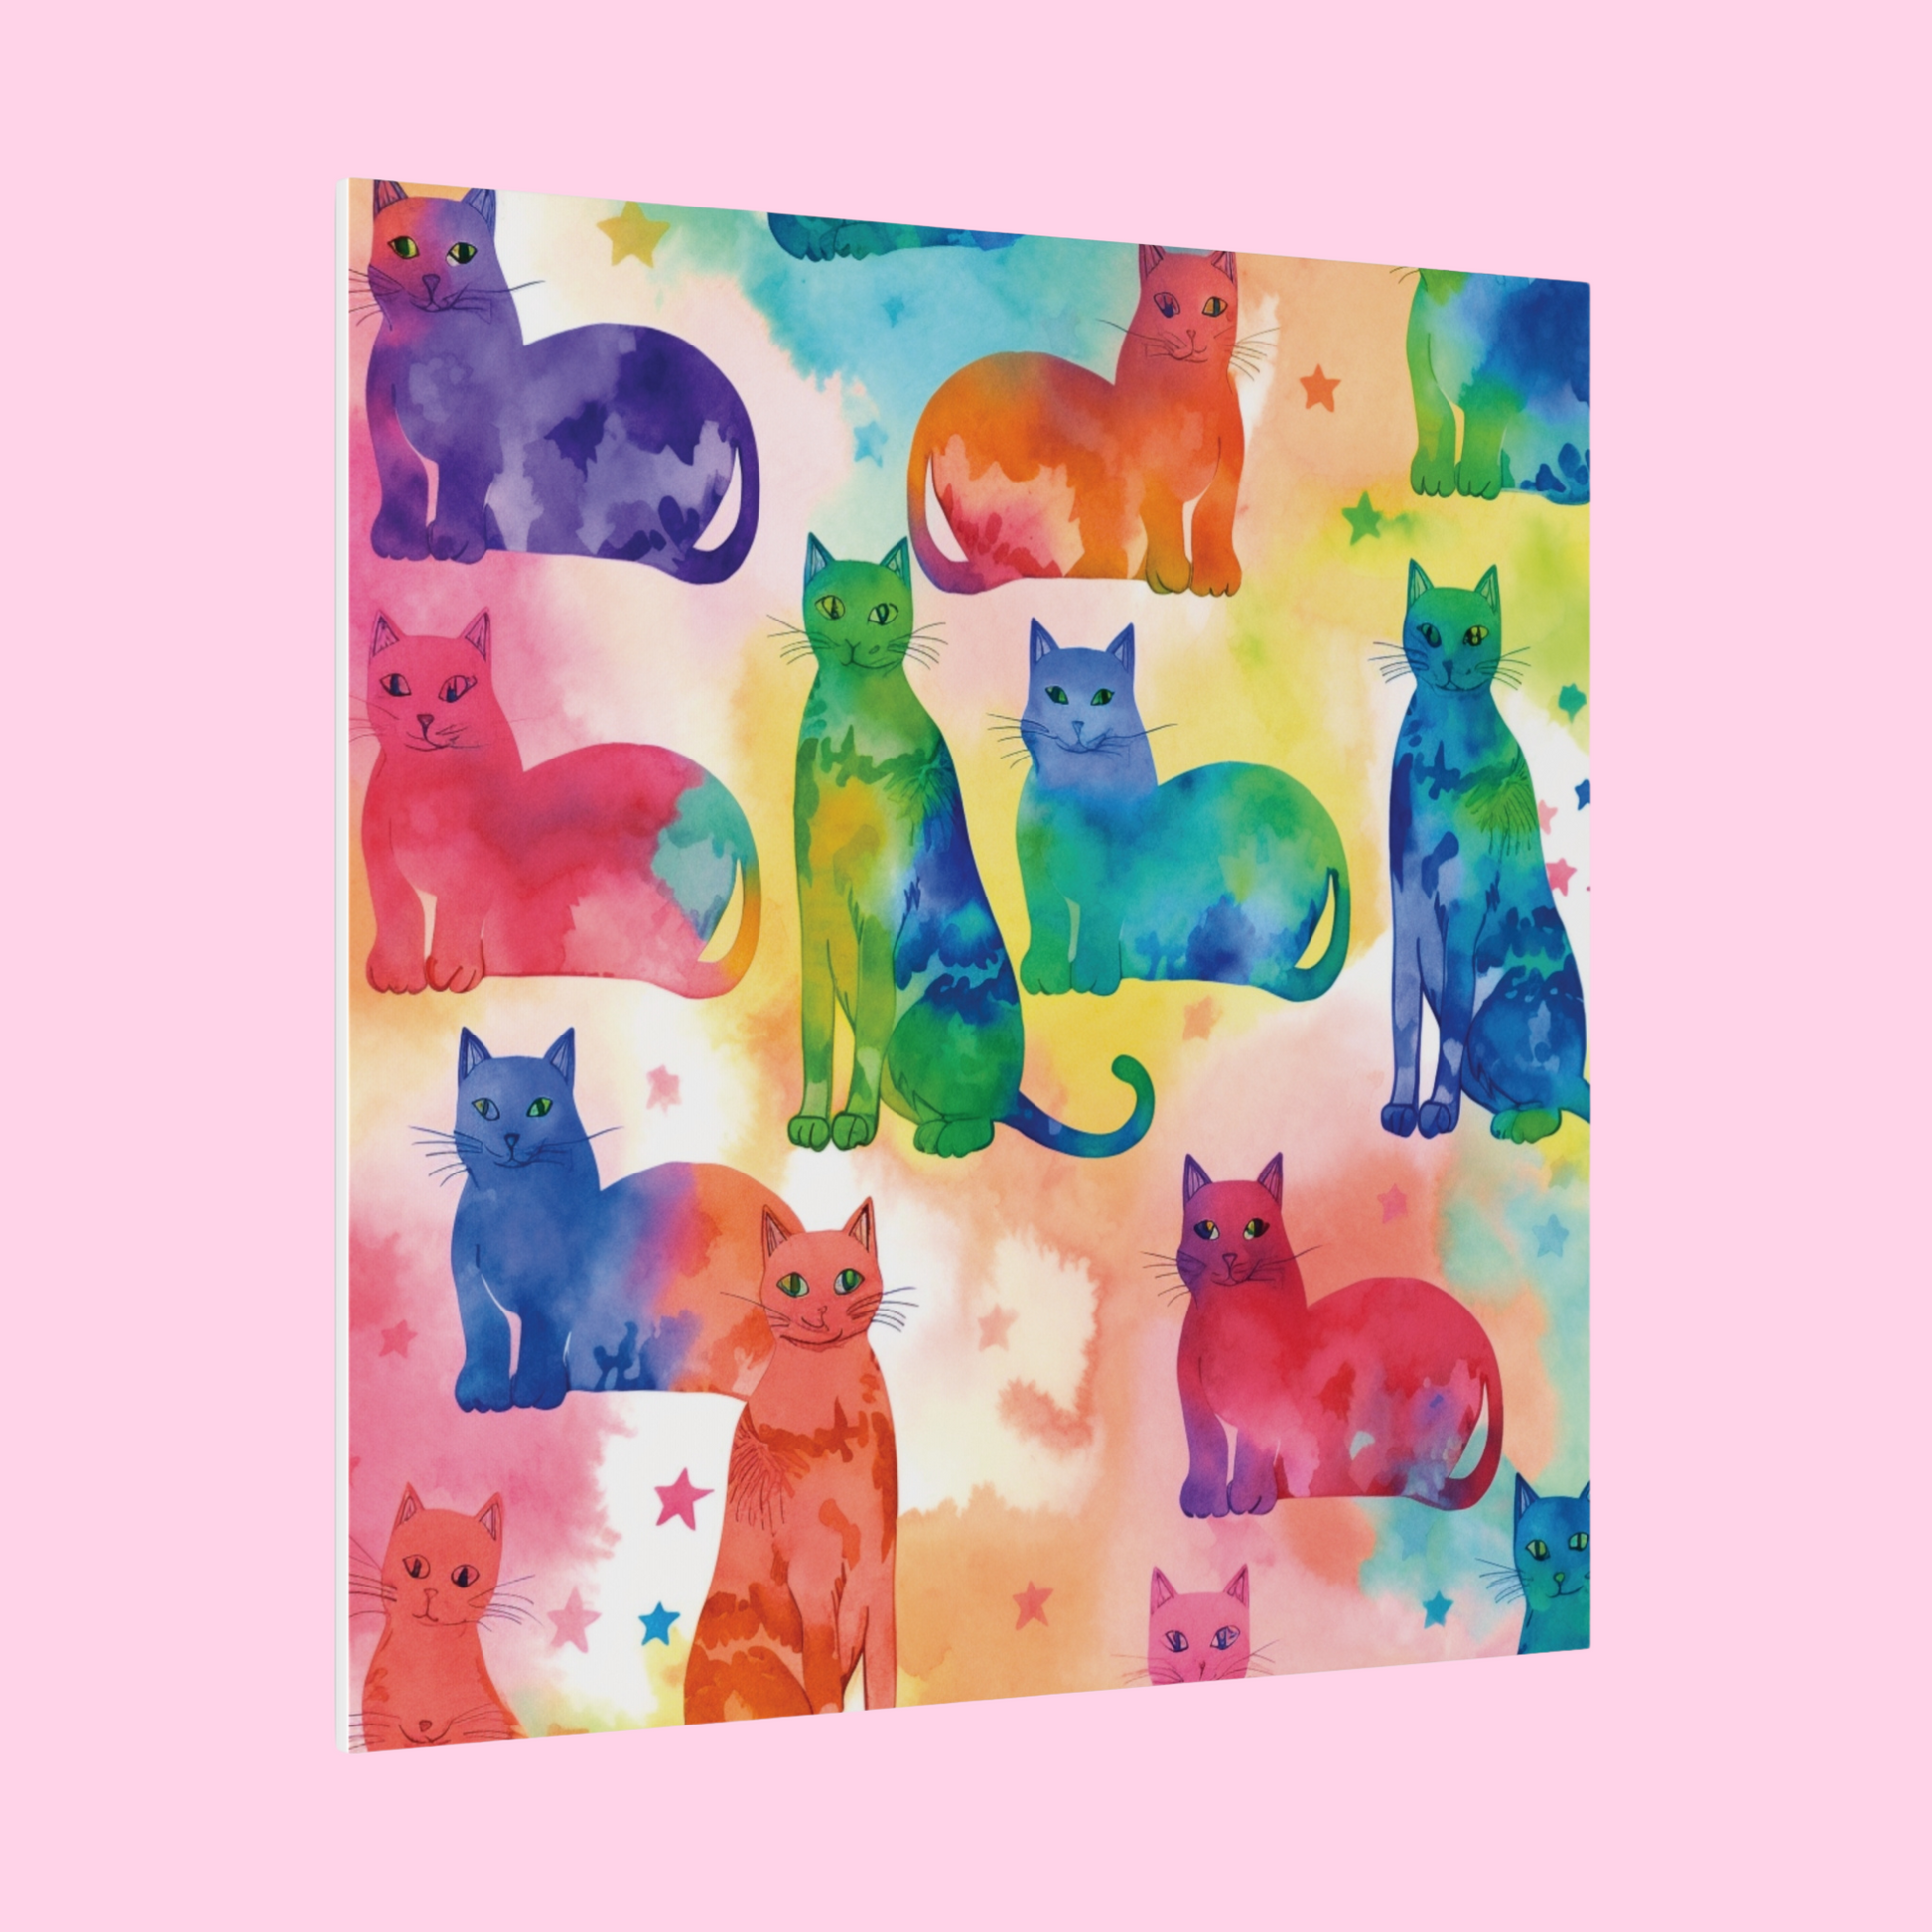 The Tie-Dye Cat Eco Canvas